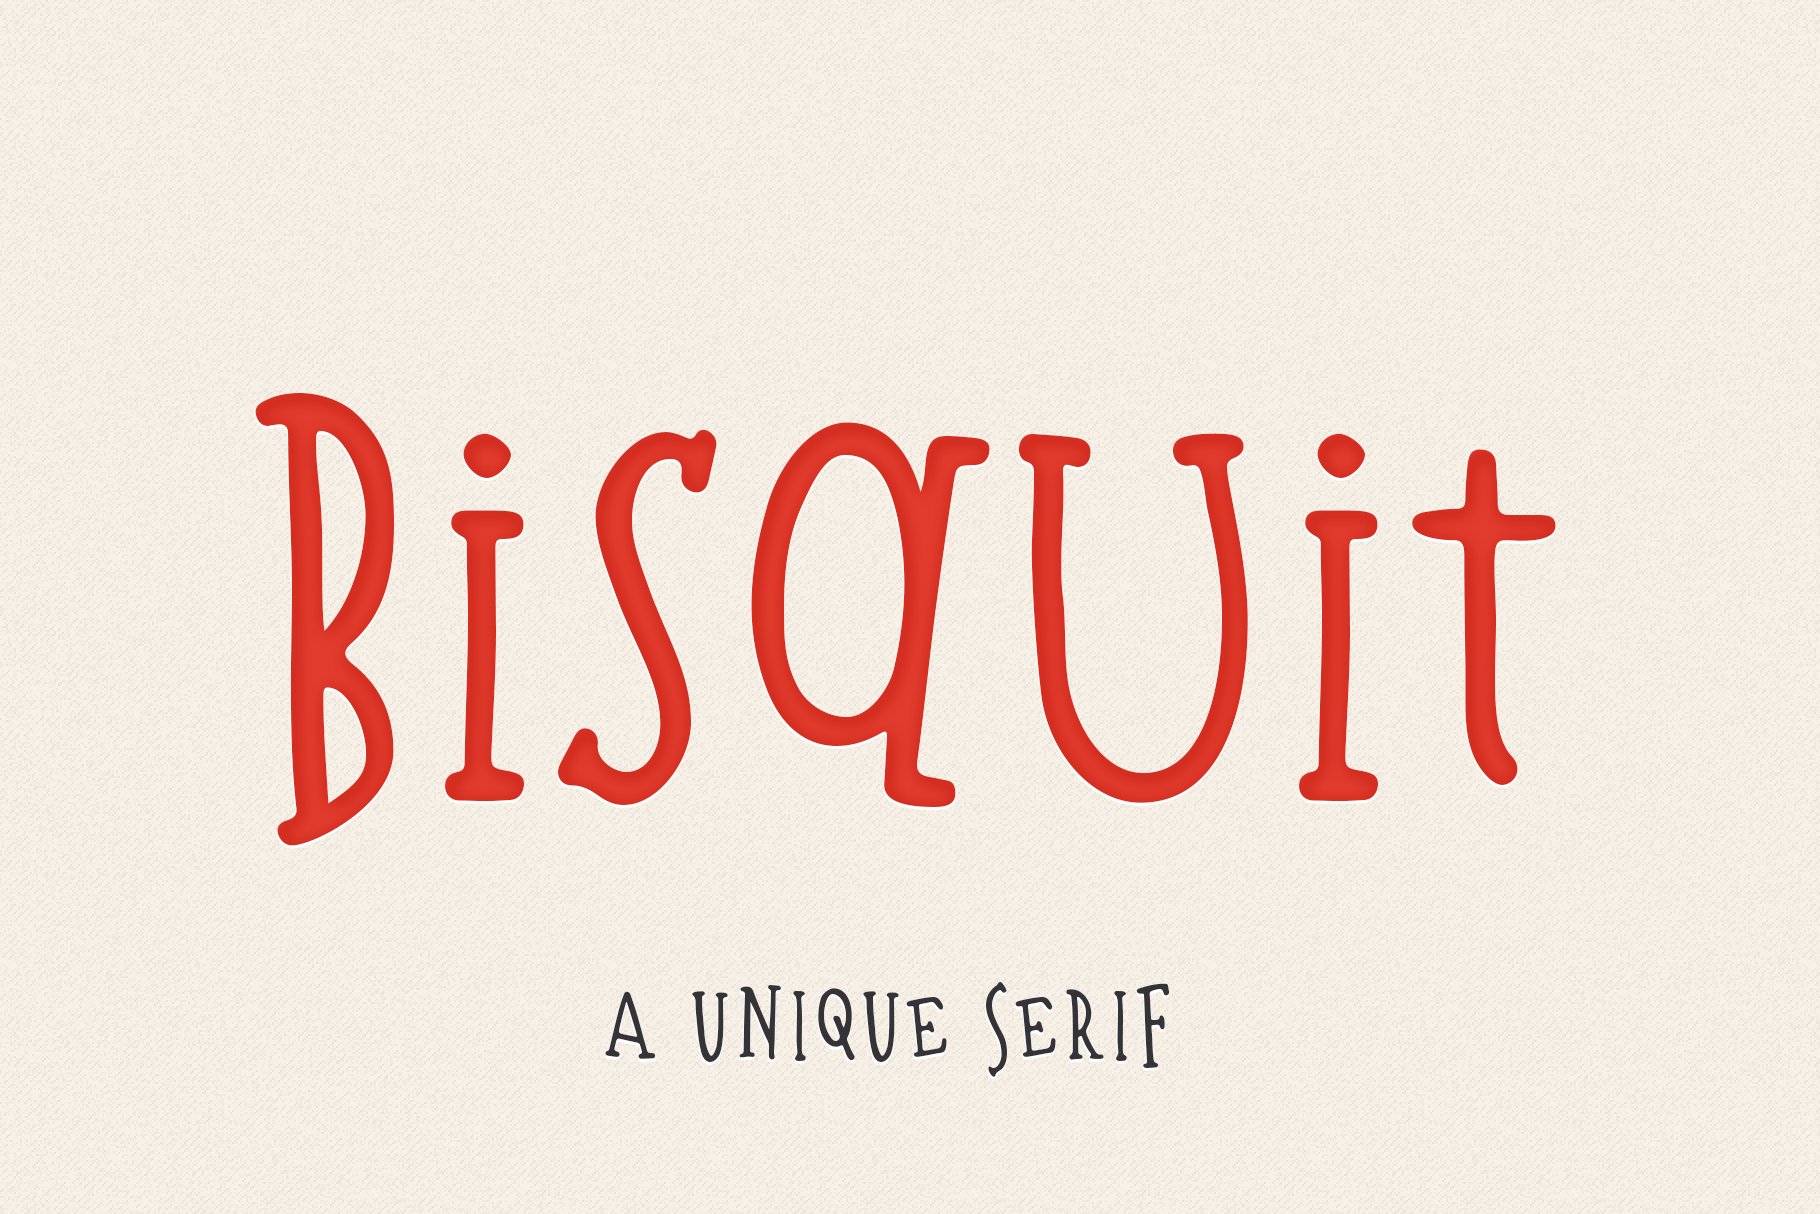 Bisquit | A Unique Serif Font cover image.